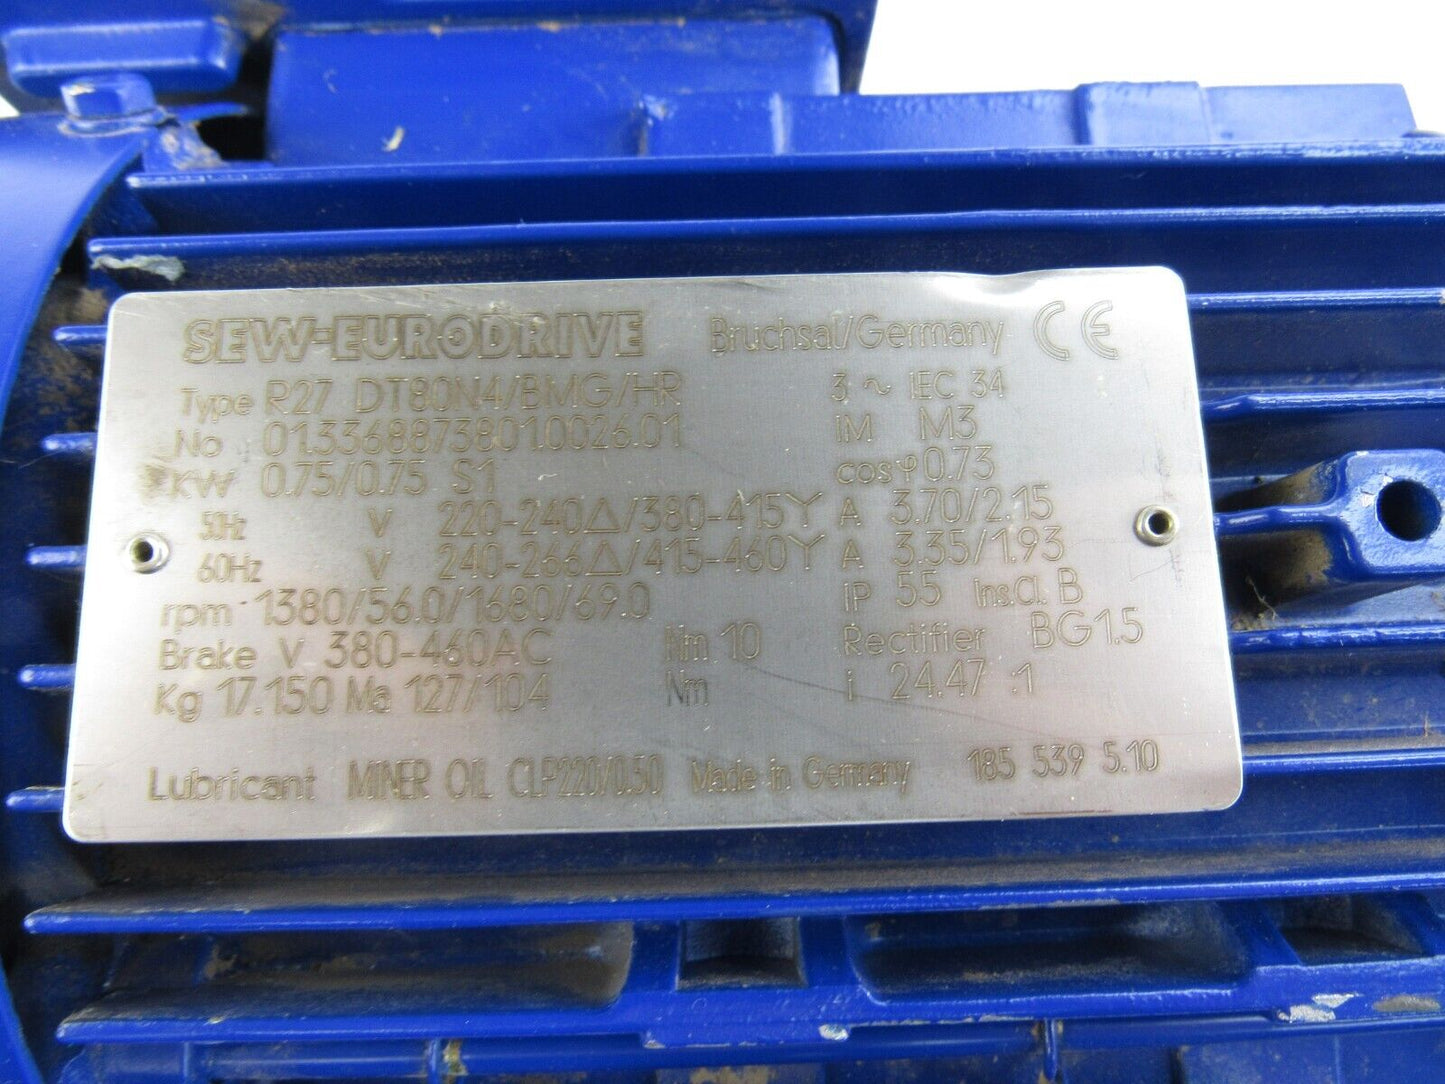 SEW R27 DT80N4/BMG/HR